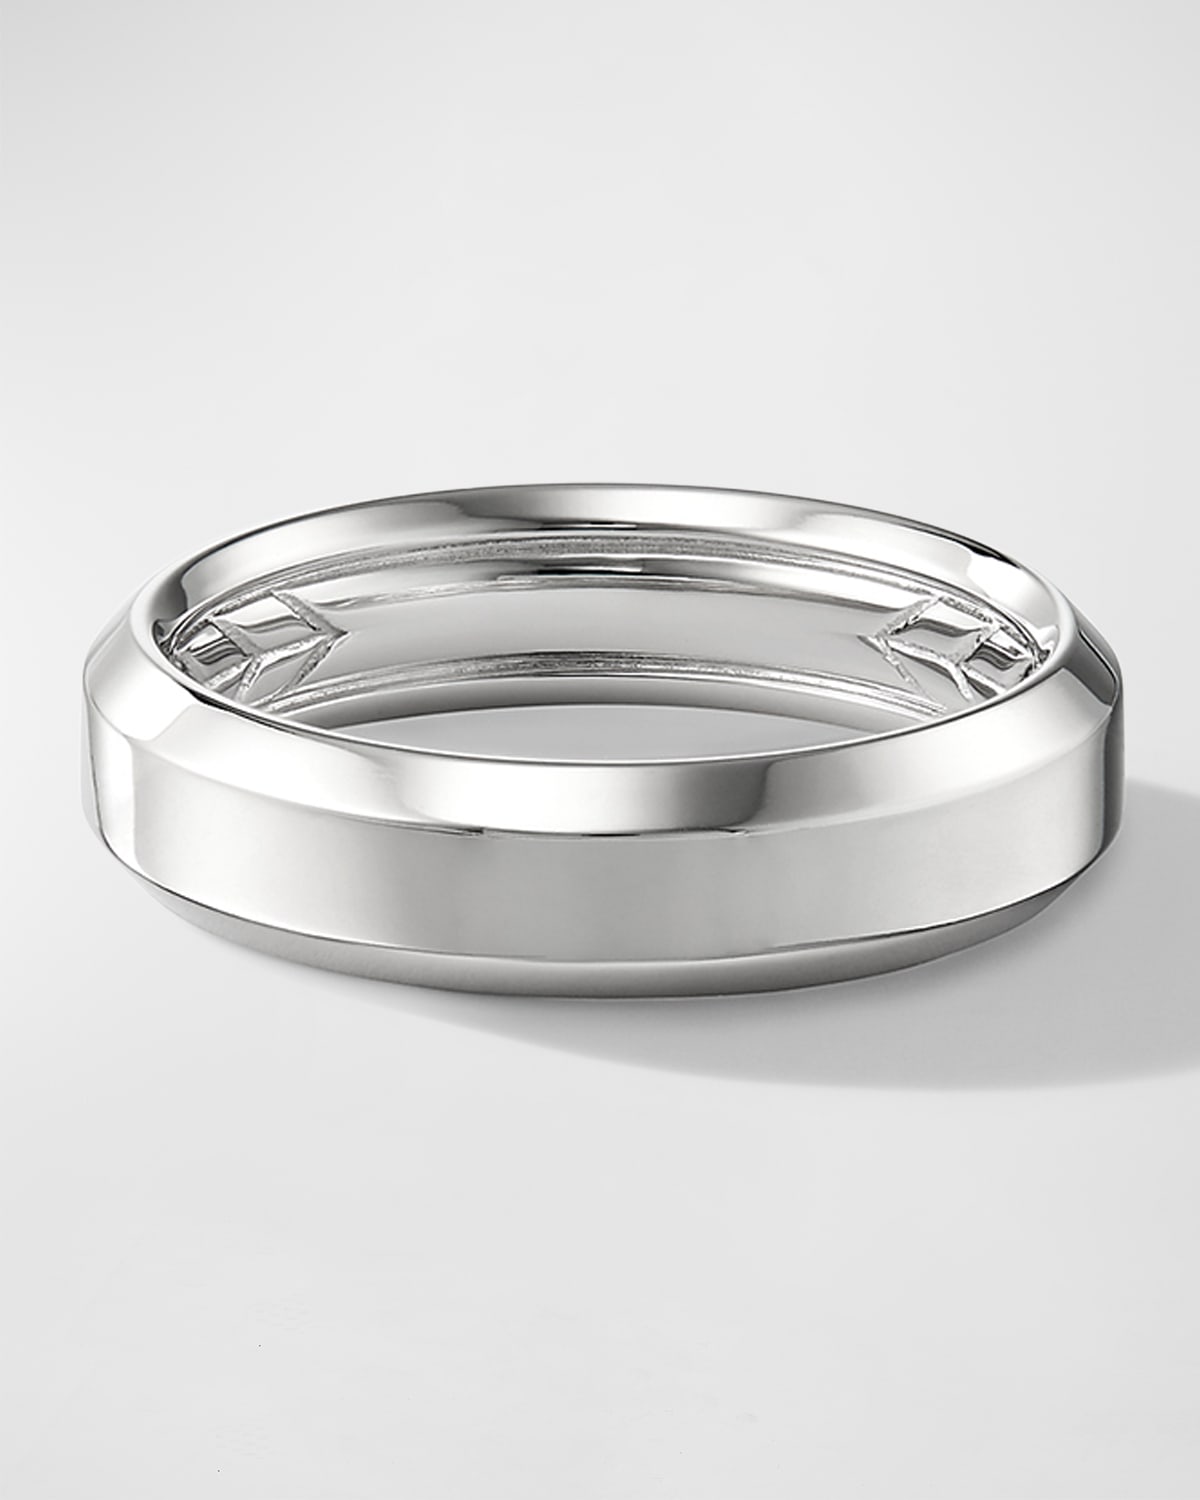 David Yurman Men's Beveled Band Ring In 18k White Gold, 6mm